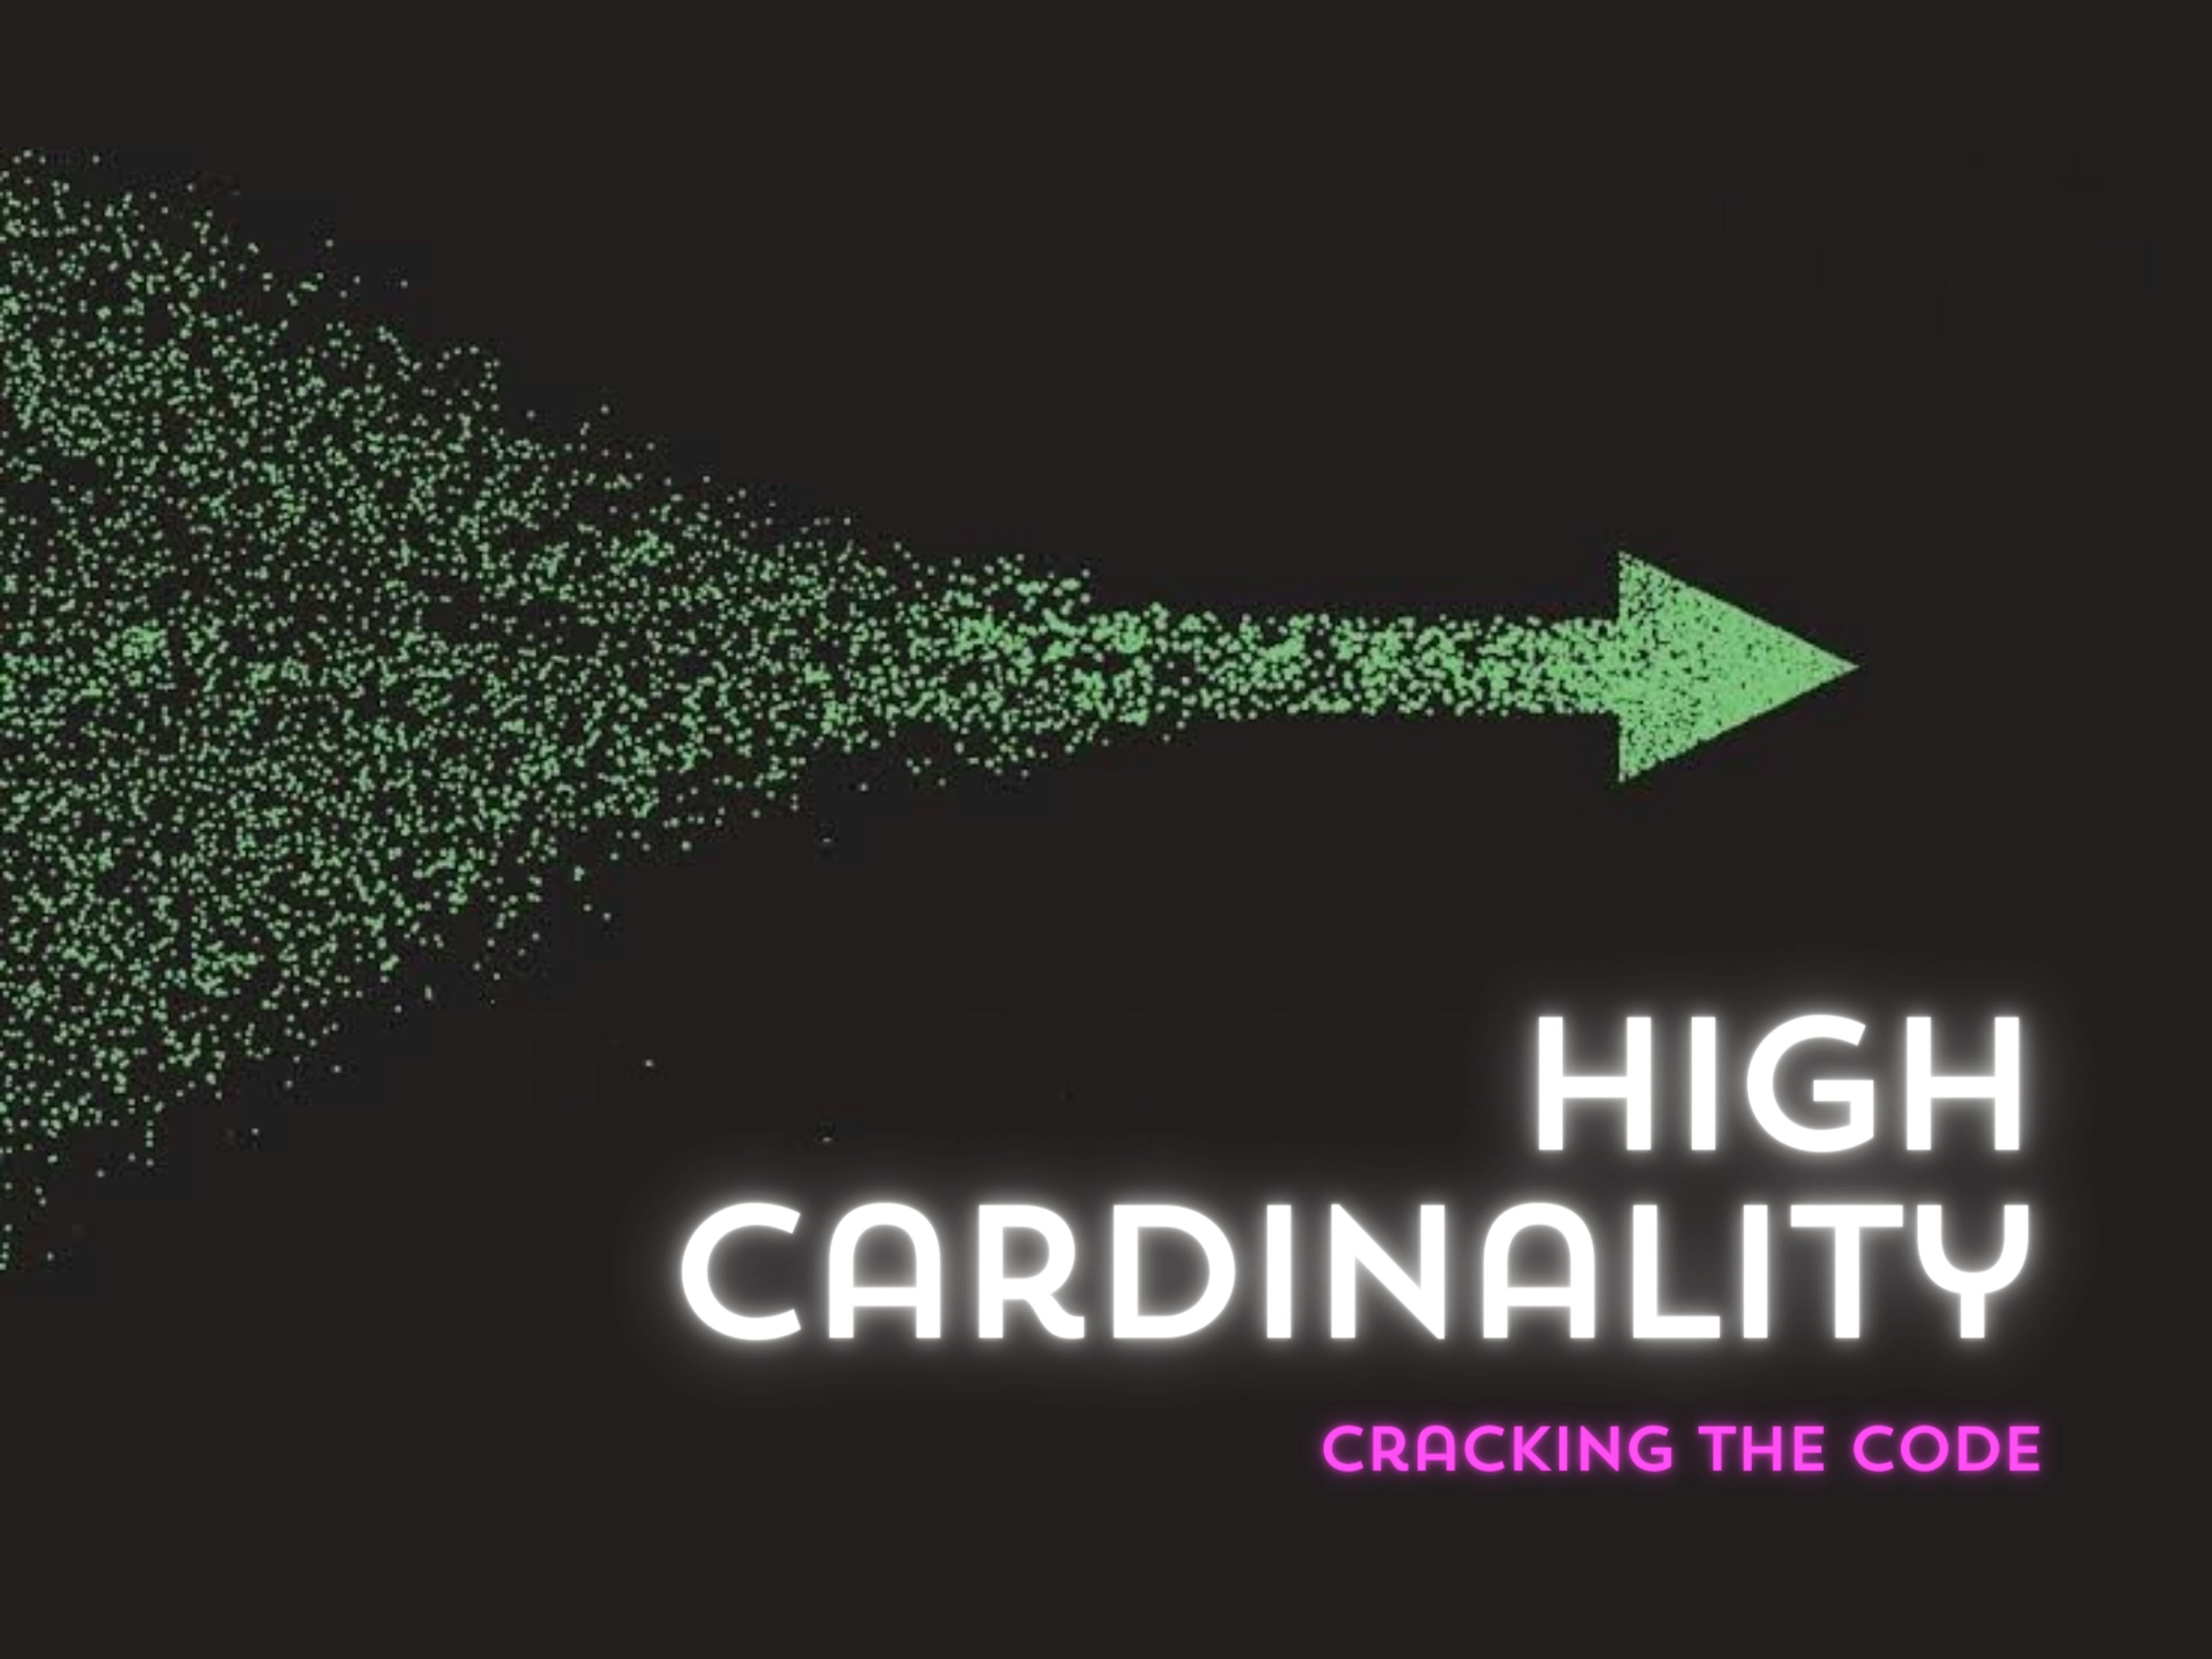 High Cardinality Metrics